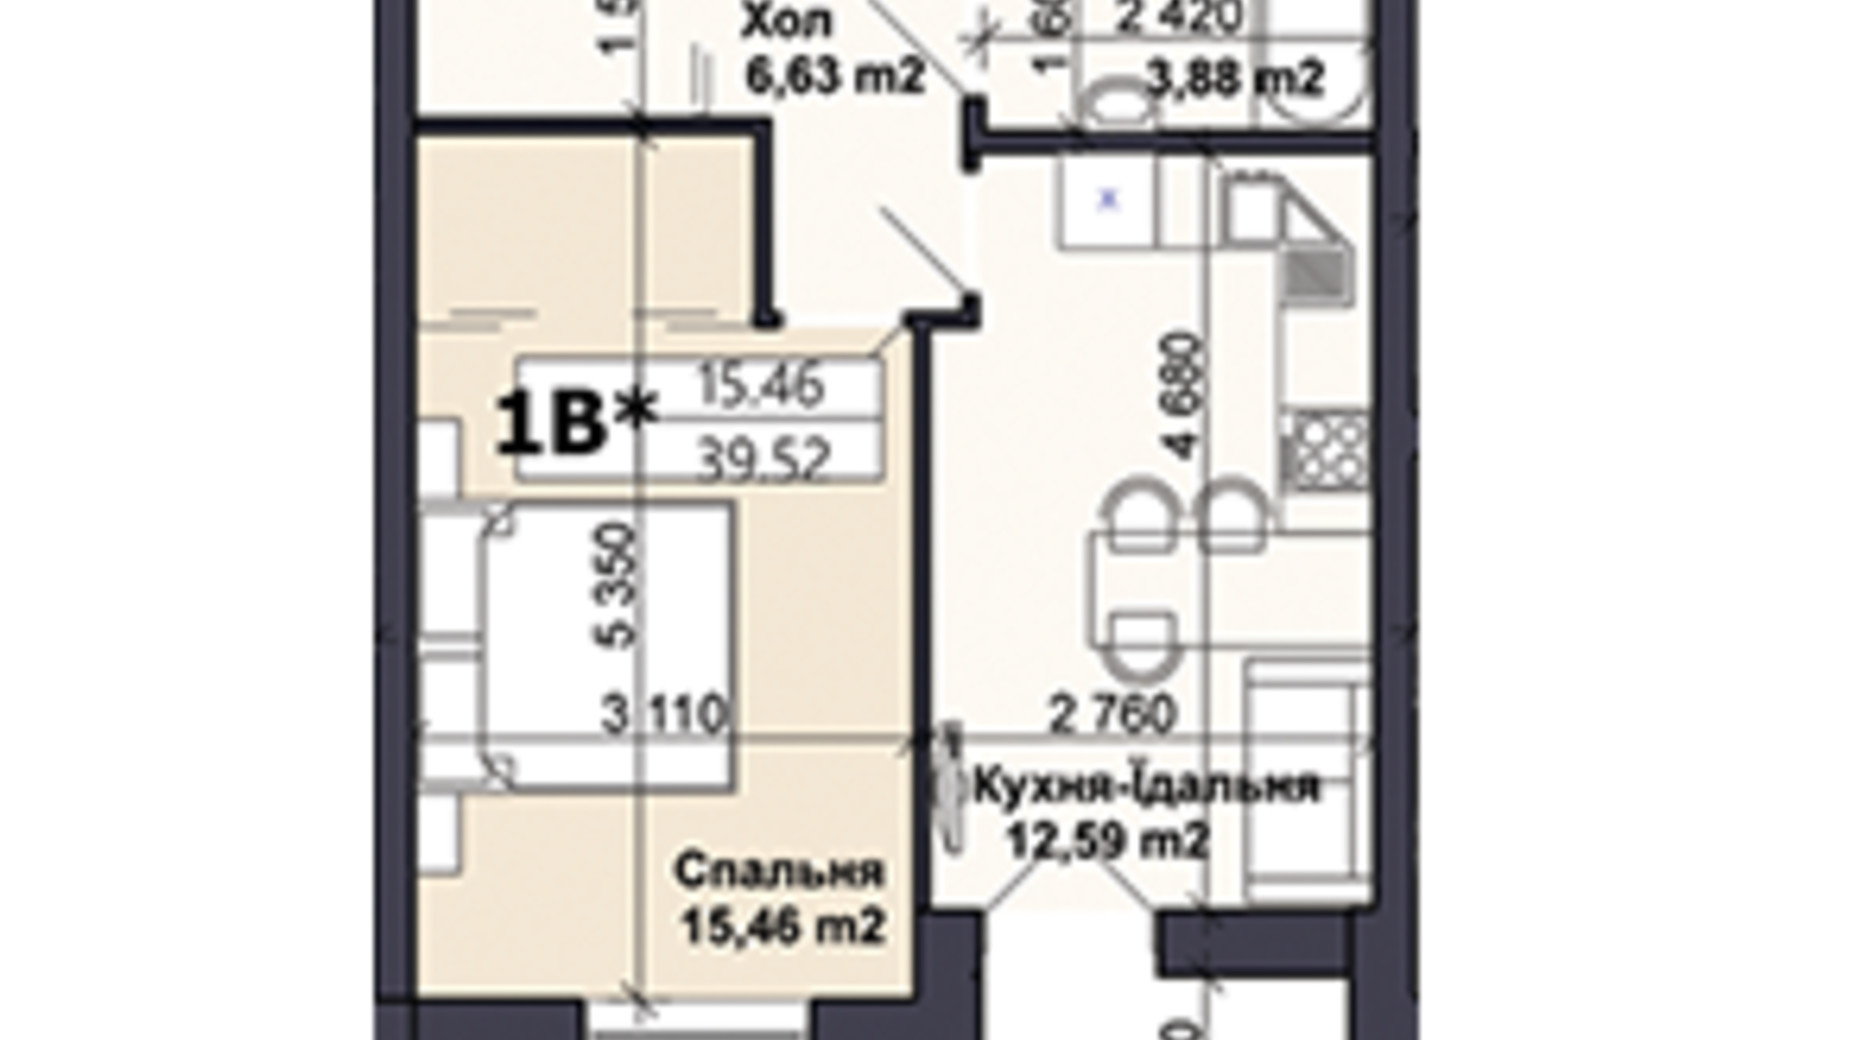 Планировка 1-комнатной квартиры в ЖК Саме той 39.52 м², фото 585411